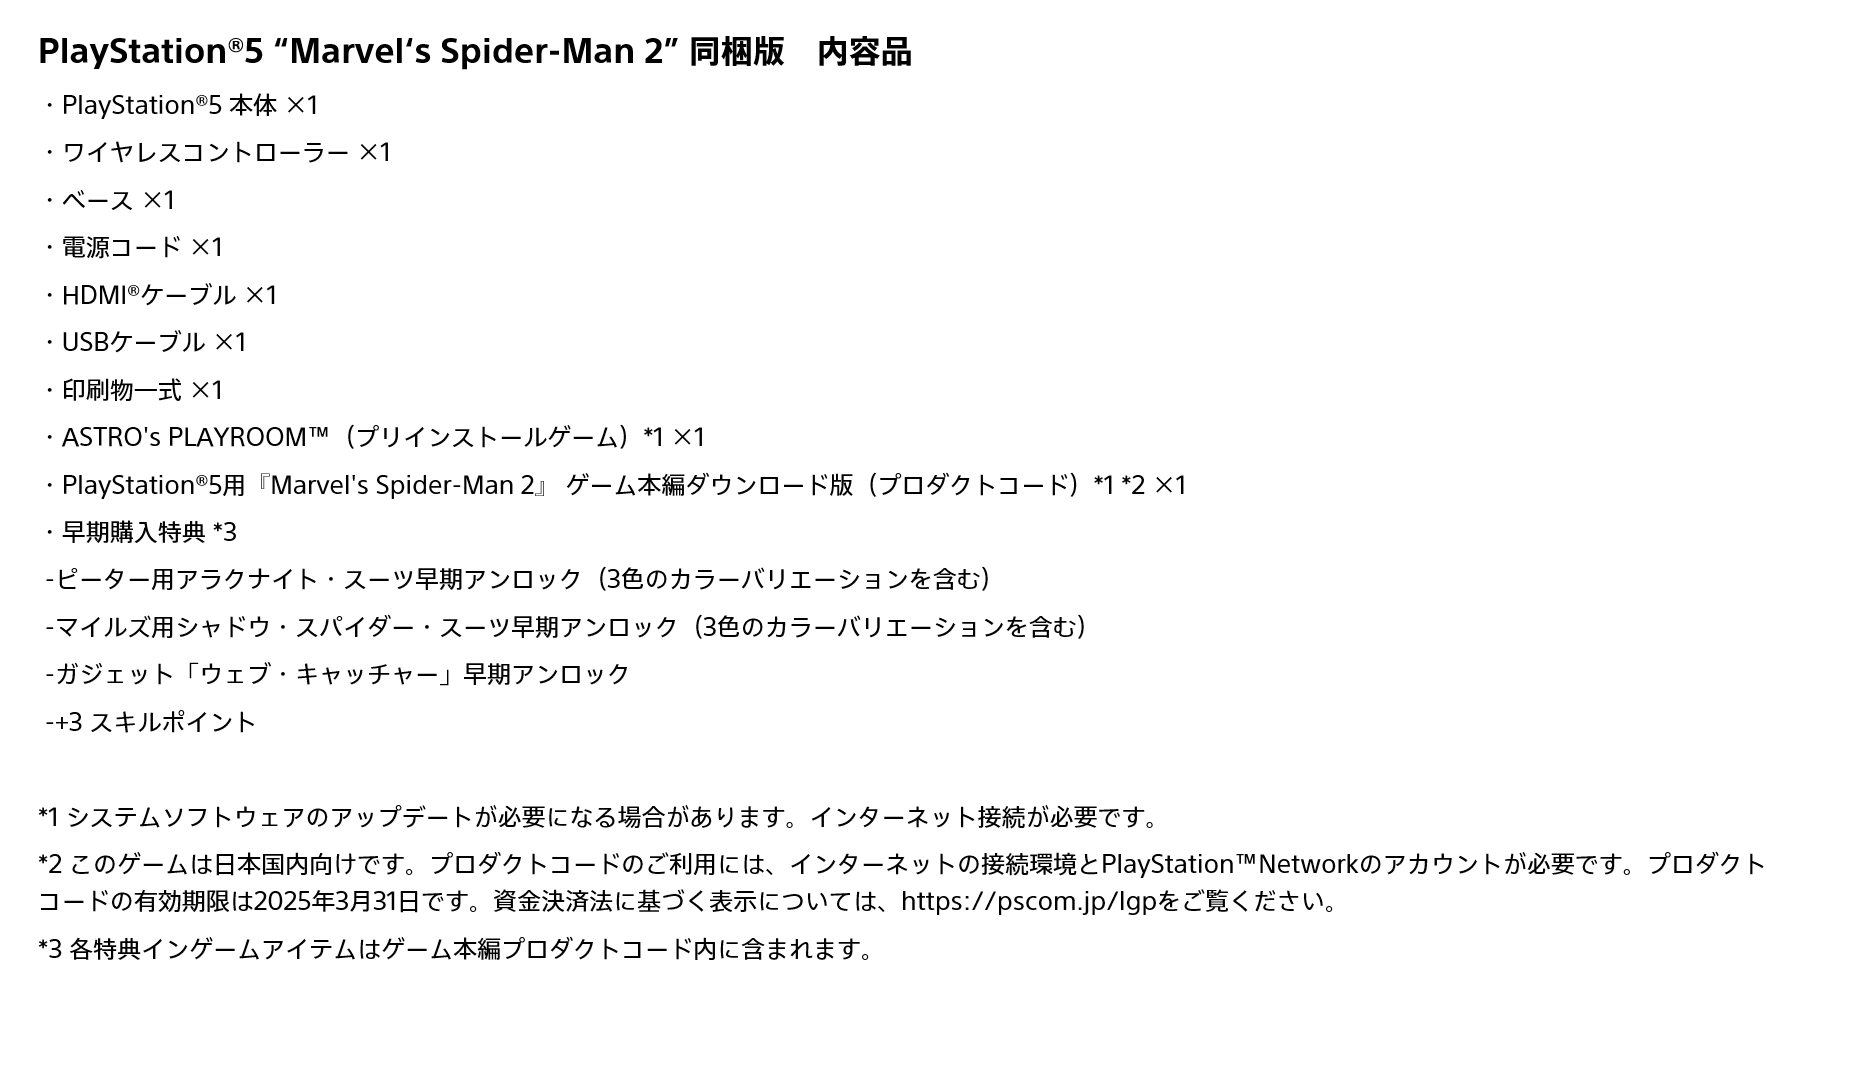 楽天ブックス: PlayStation5 “Marvel's Spider-Man 2” 同梱版 - PS5